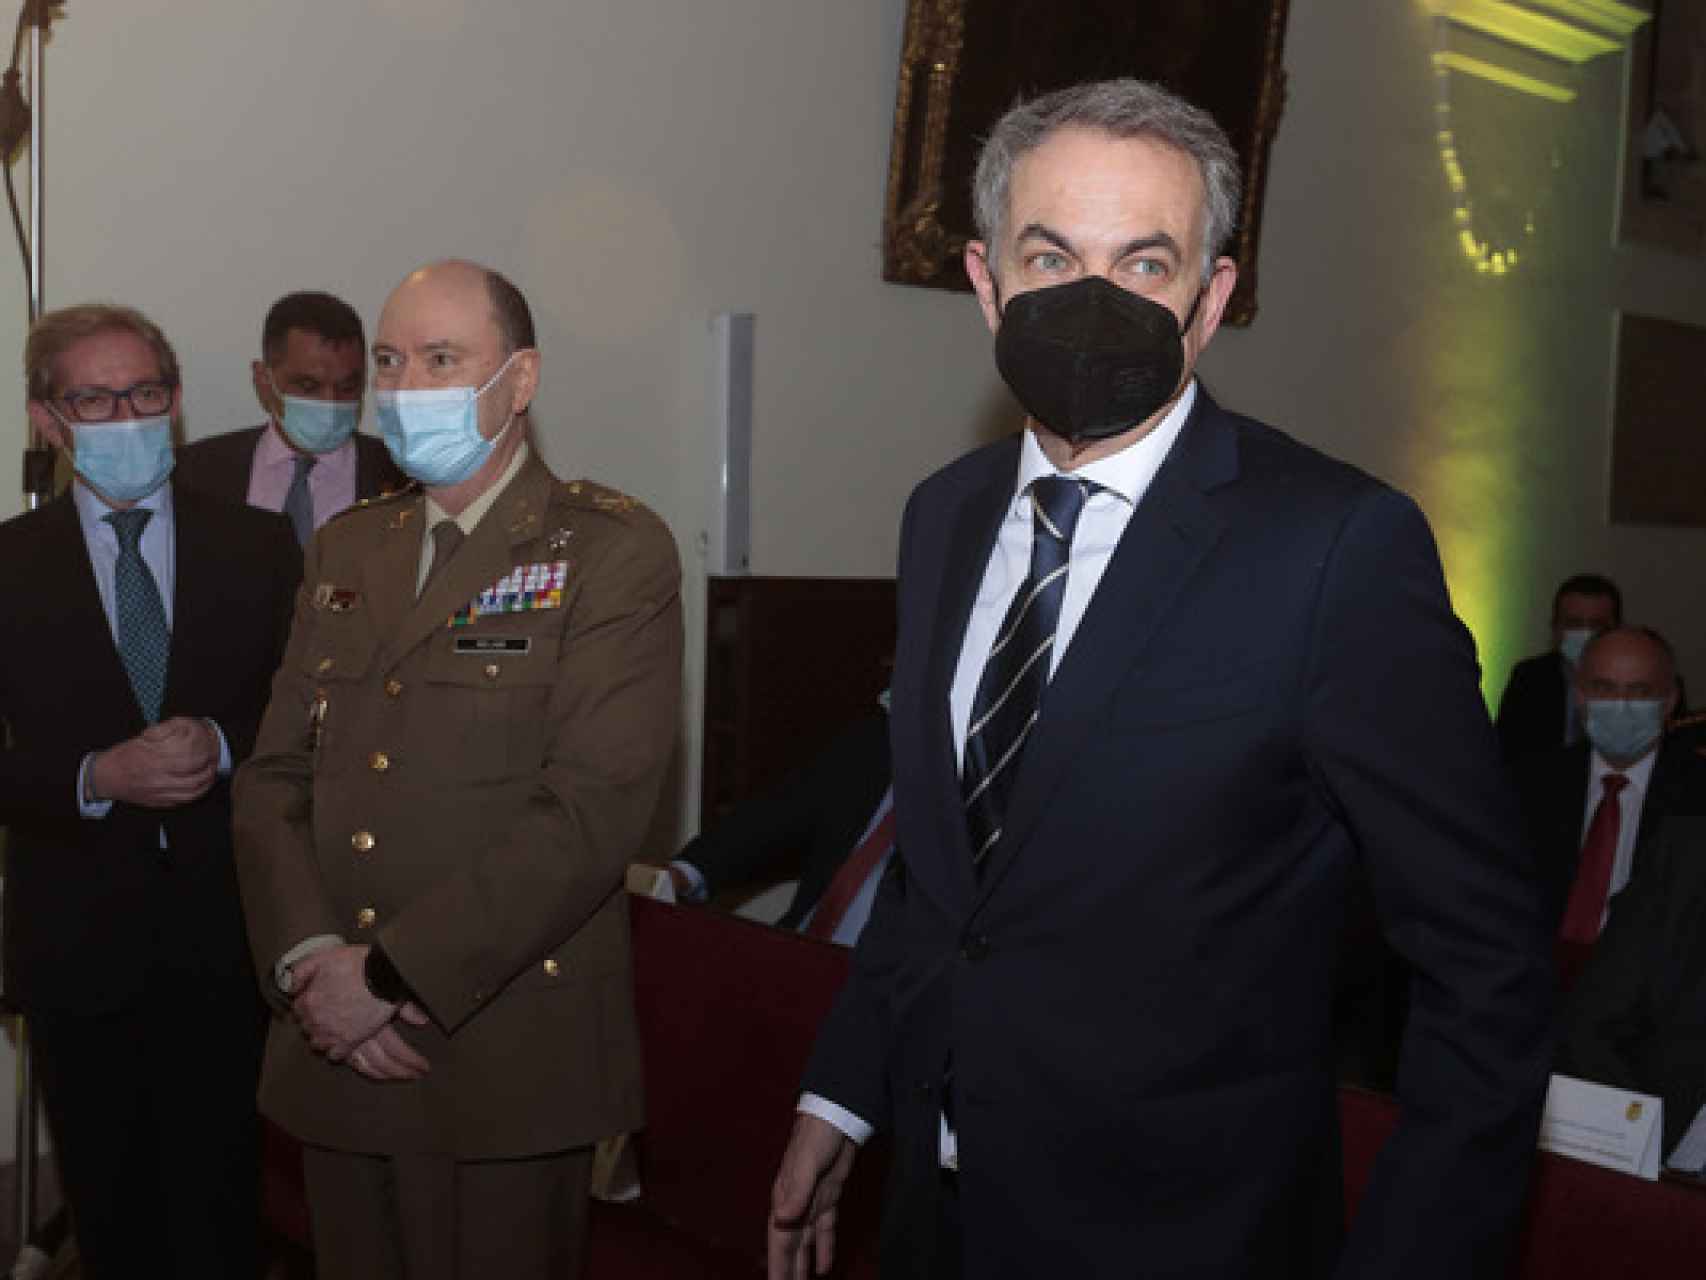 El expresidente del Gobierno, José Luis Rodríguez Zapatero, durante la entrega de la Medalla de Oro de la Cámara de Comercio de León a la Unidad Militar de Emergencias